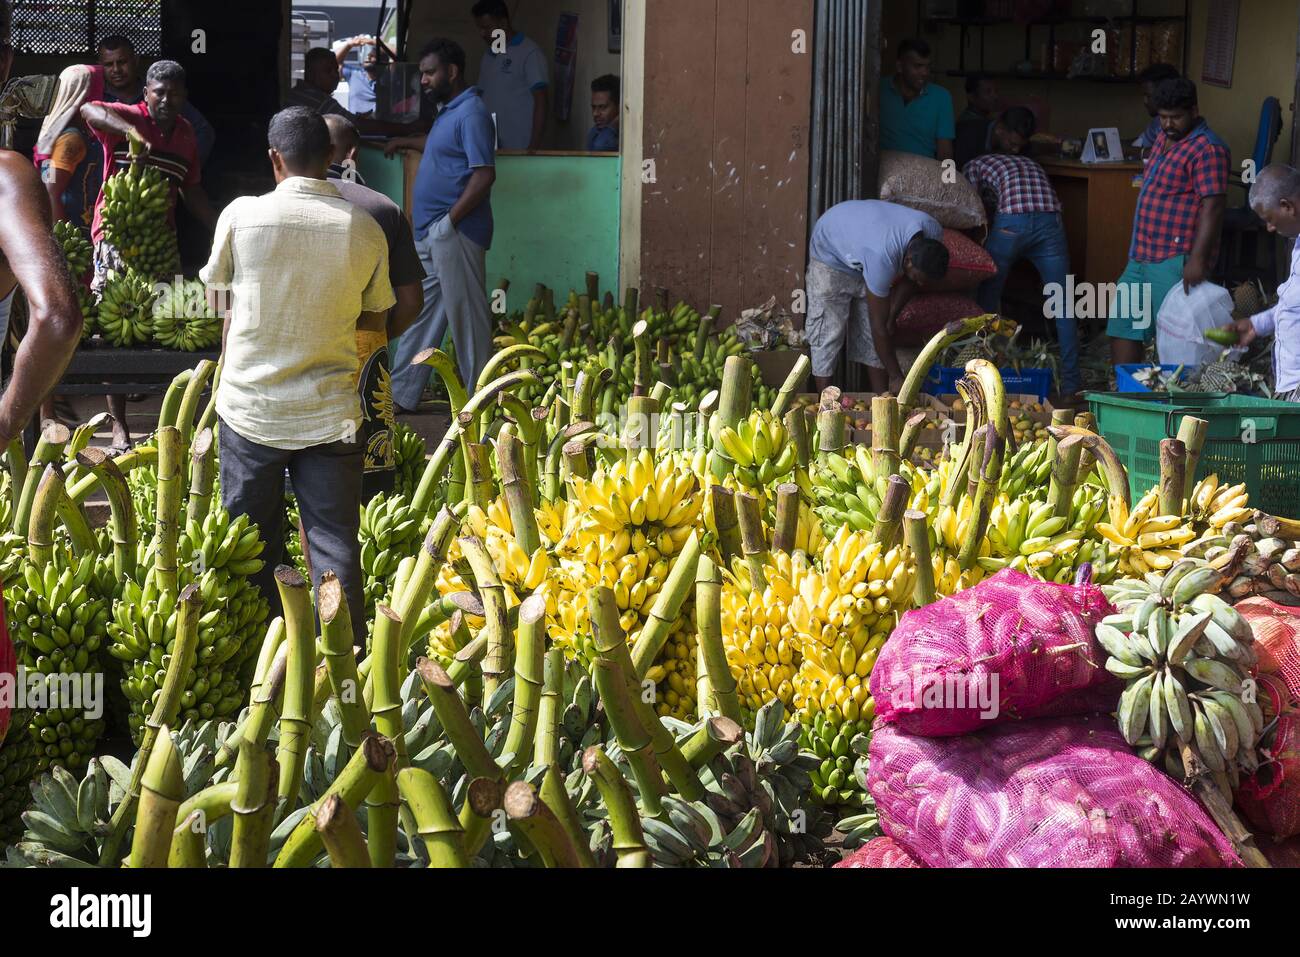 Dambulla, Sri Lanka: 18.03.2019: Innerhalb des größten Obst- und Gemüsemarkts in Sri Lanka. Frische Bananen sind zum Verkauf bereit. Stockfoto